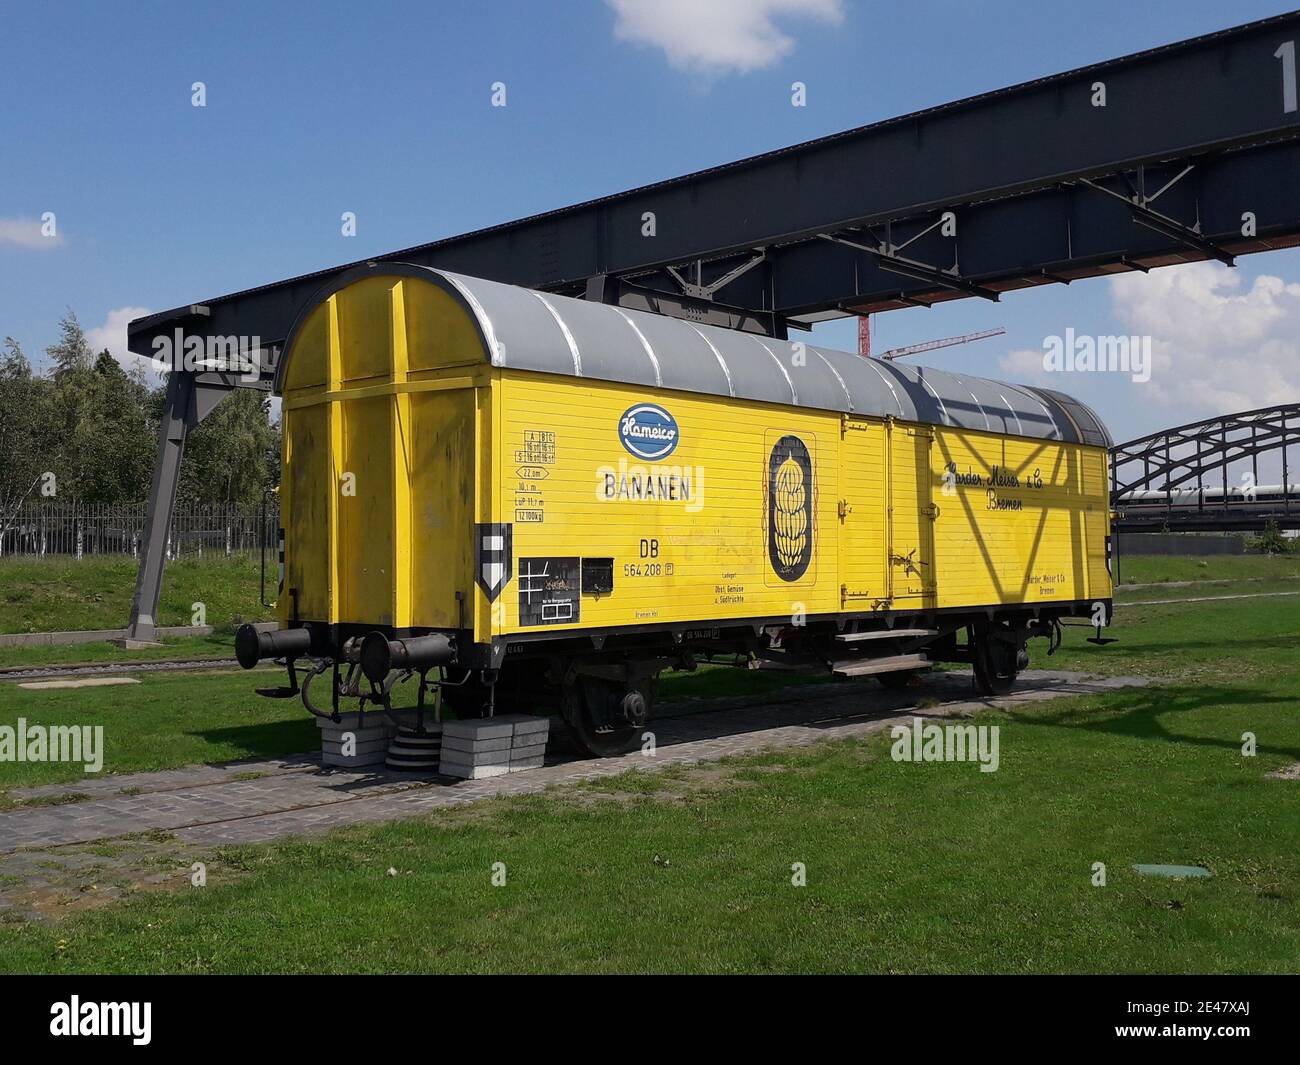 FRANCFORT, ALLEMAGNE - 14 mai 2020 : un wagon muséal de transport de bananes près de la Banque centrale européenne, port est de Francfort. Banque D'Images